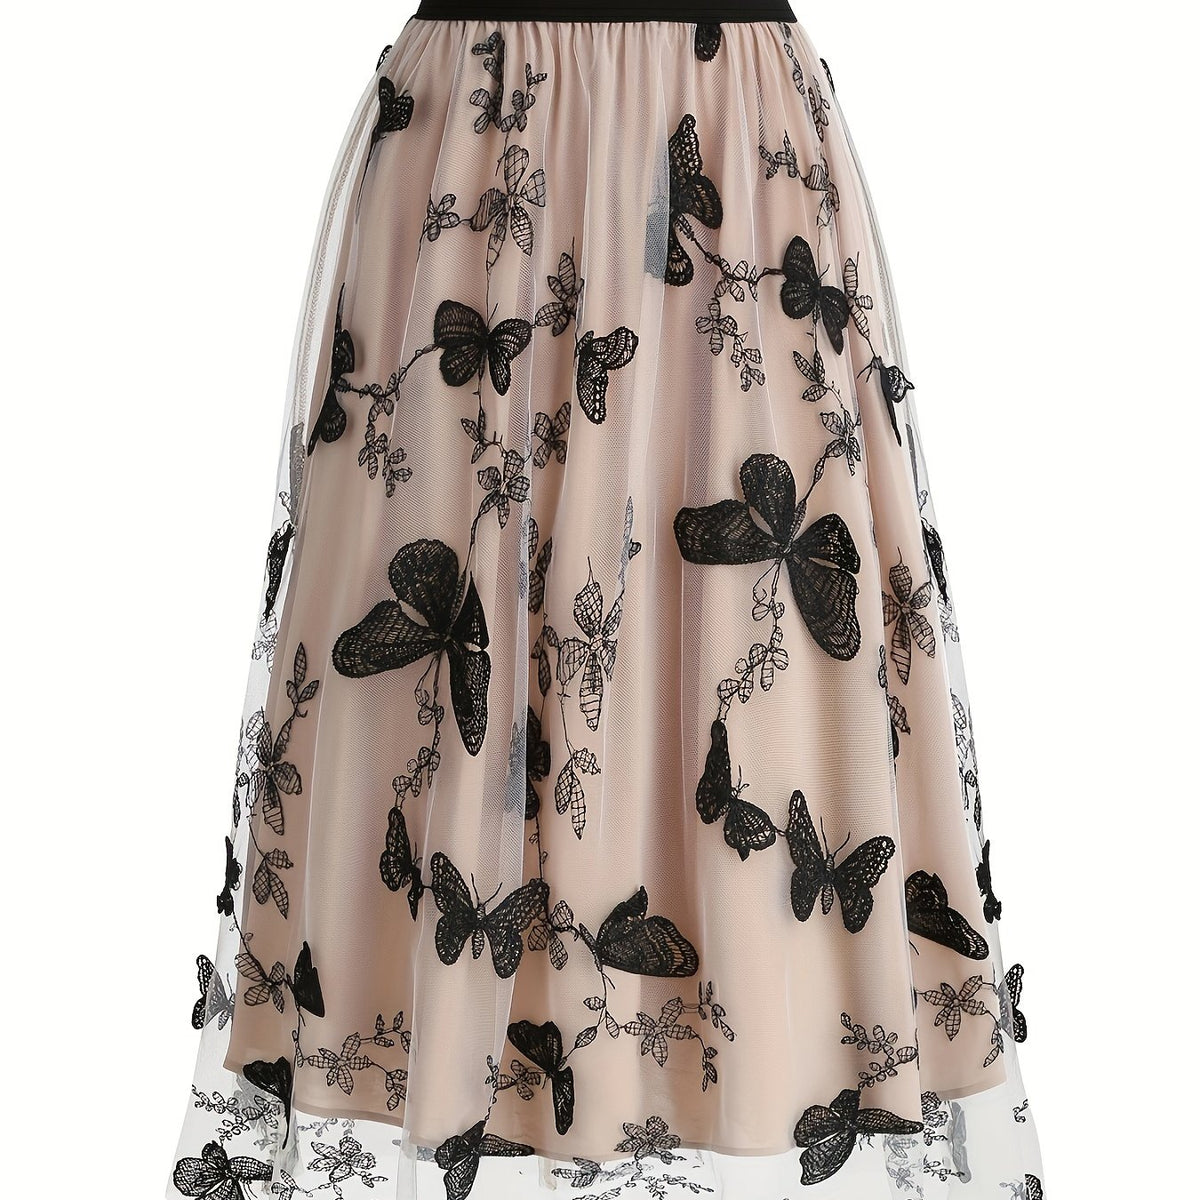 vlovelaw  Butterfly Embroidered Mesh Skirt, Elegant High Waist Skirt, Women's Clothing